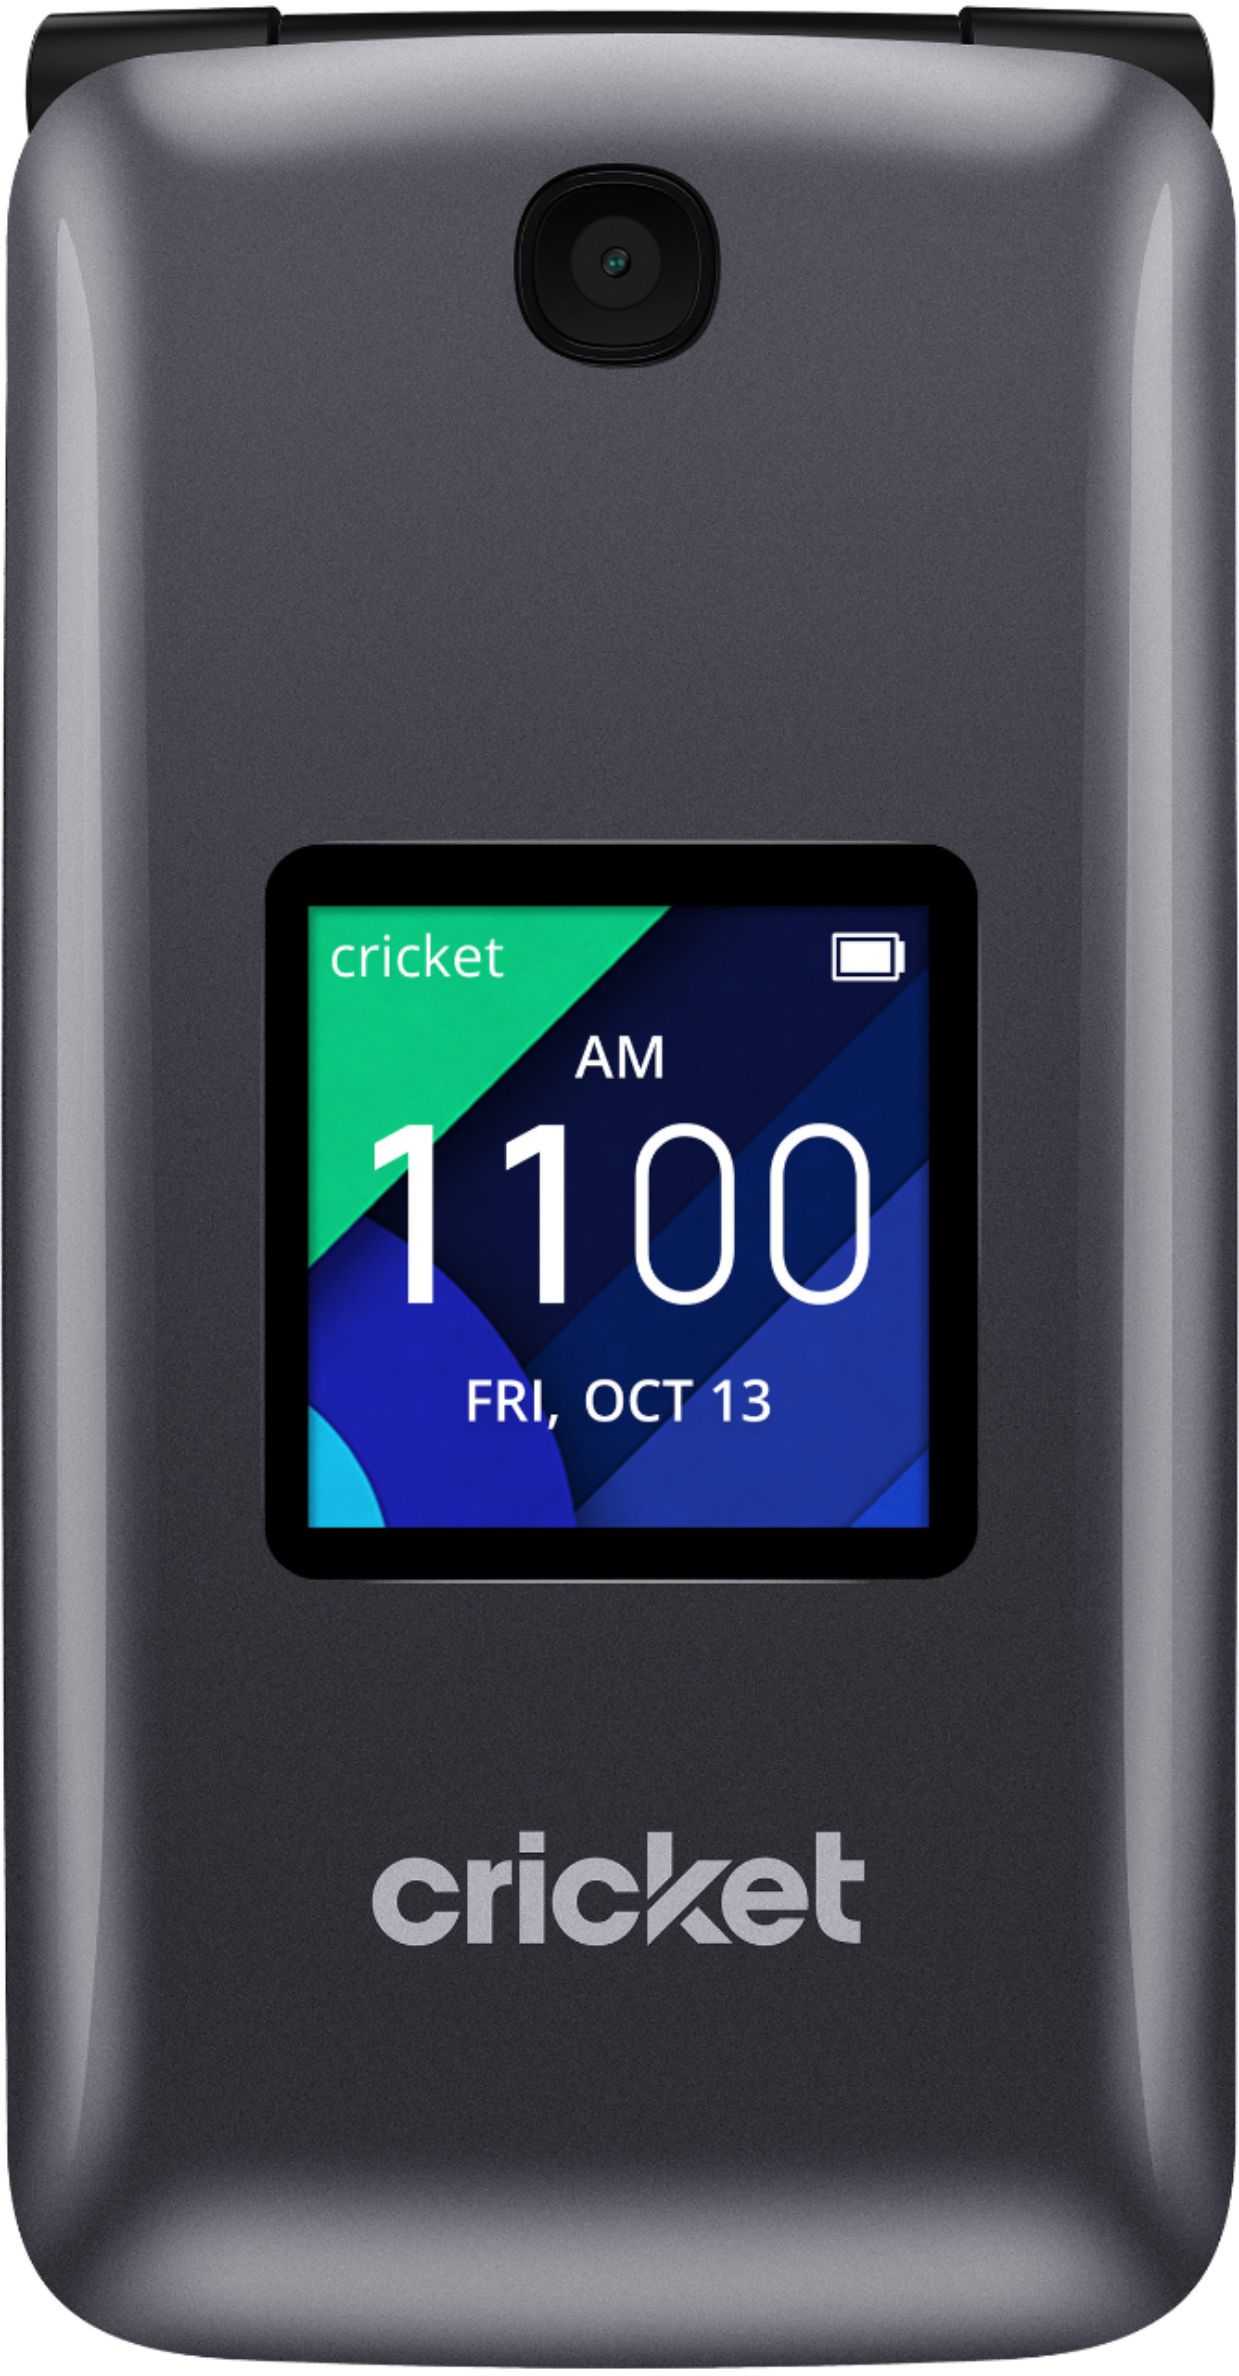 prepaid-phone-cricket-debut-flip-4g-lte-navy-blue-cricket-wireless